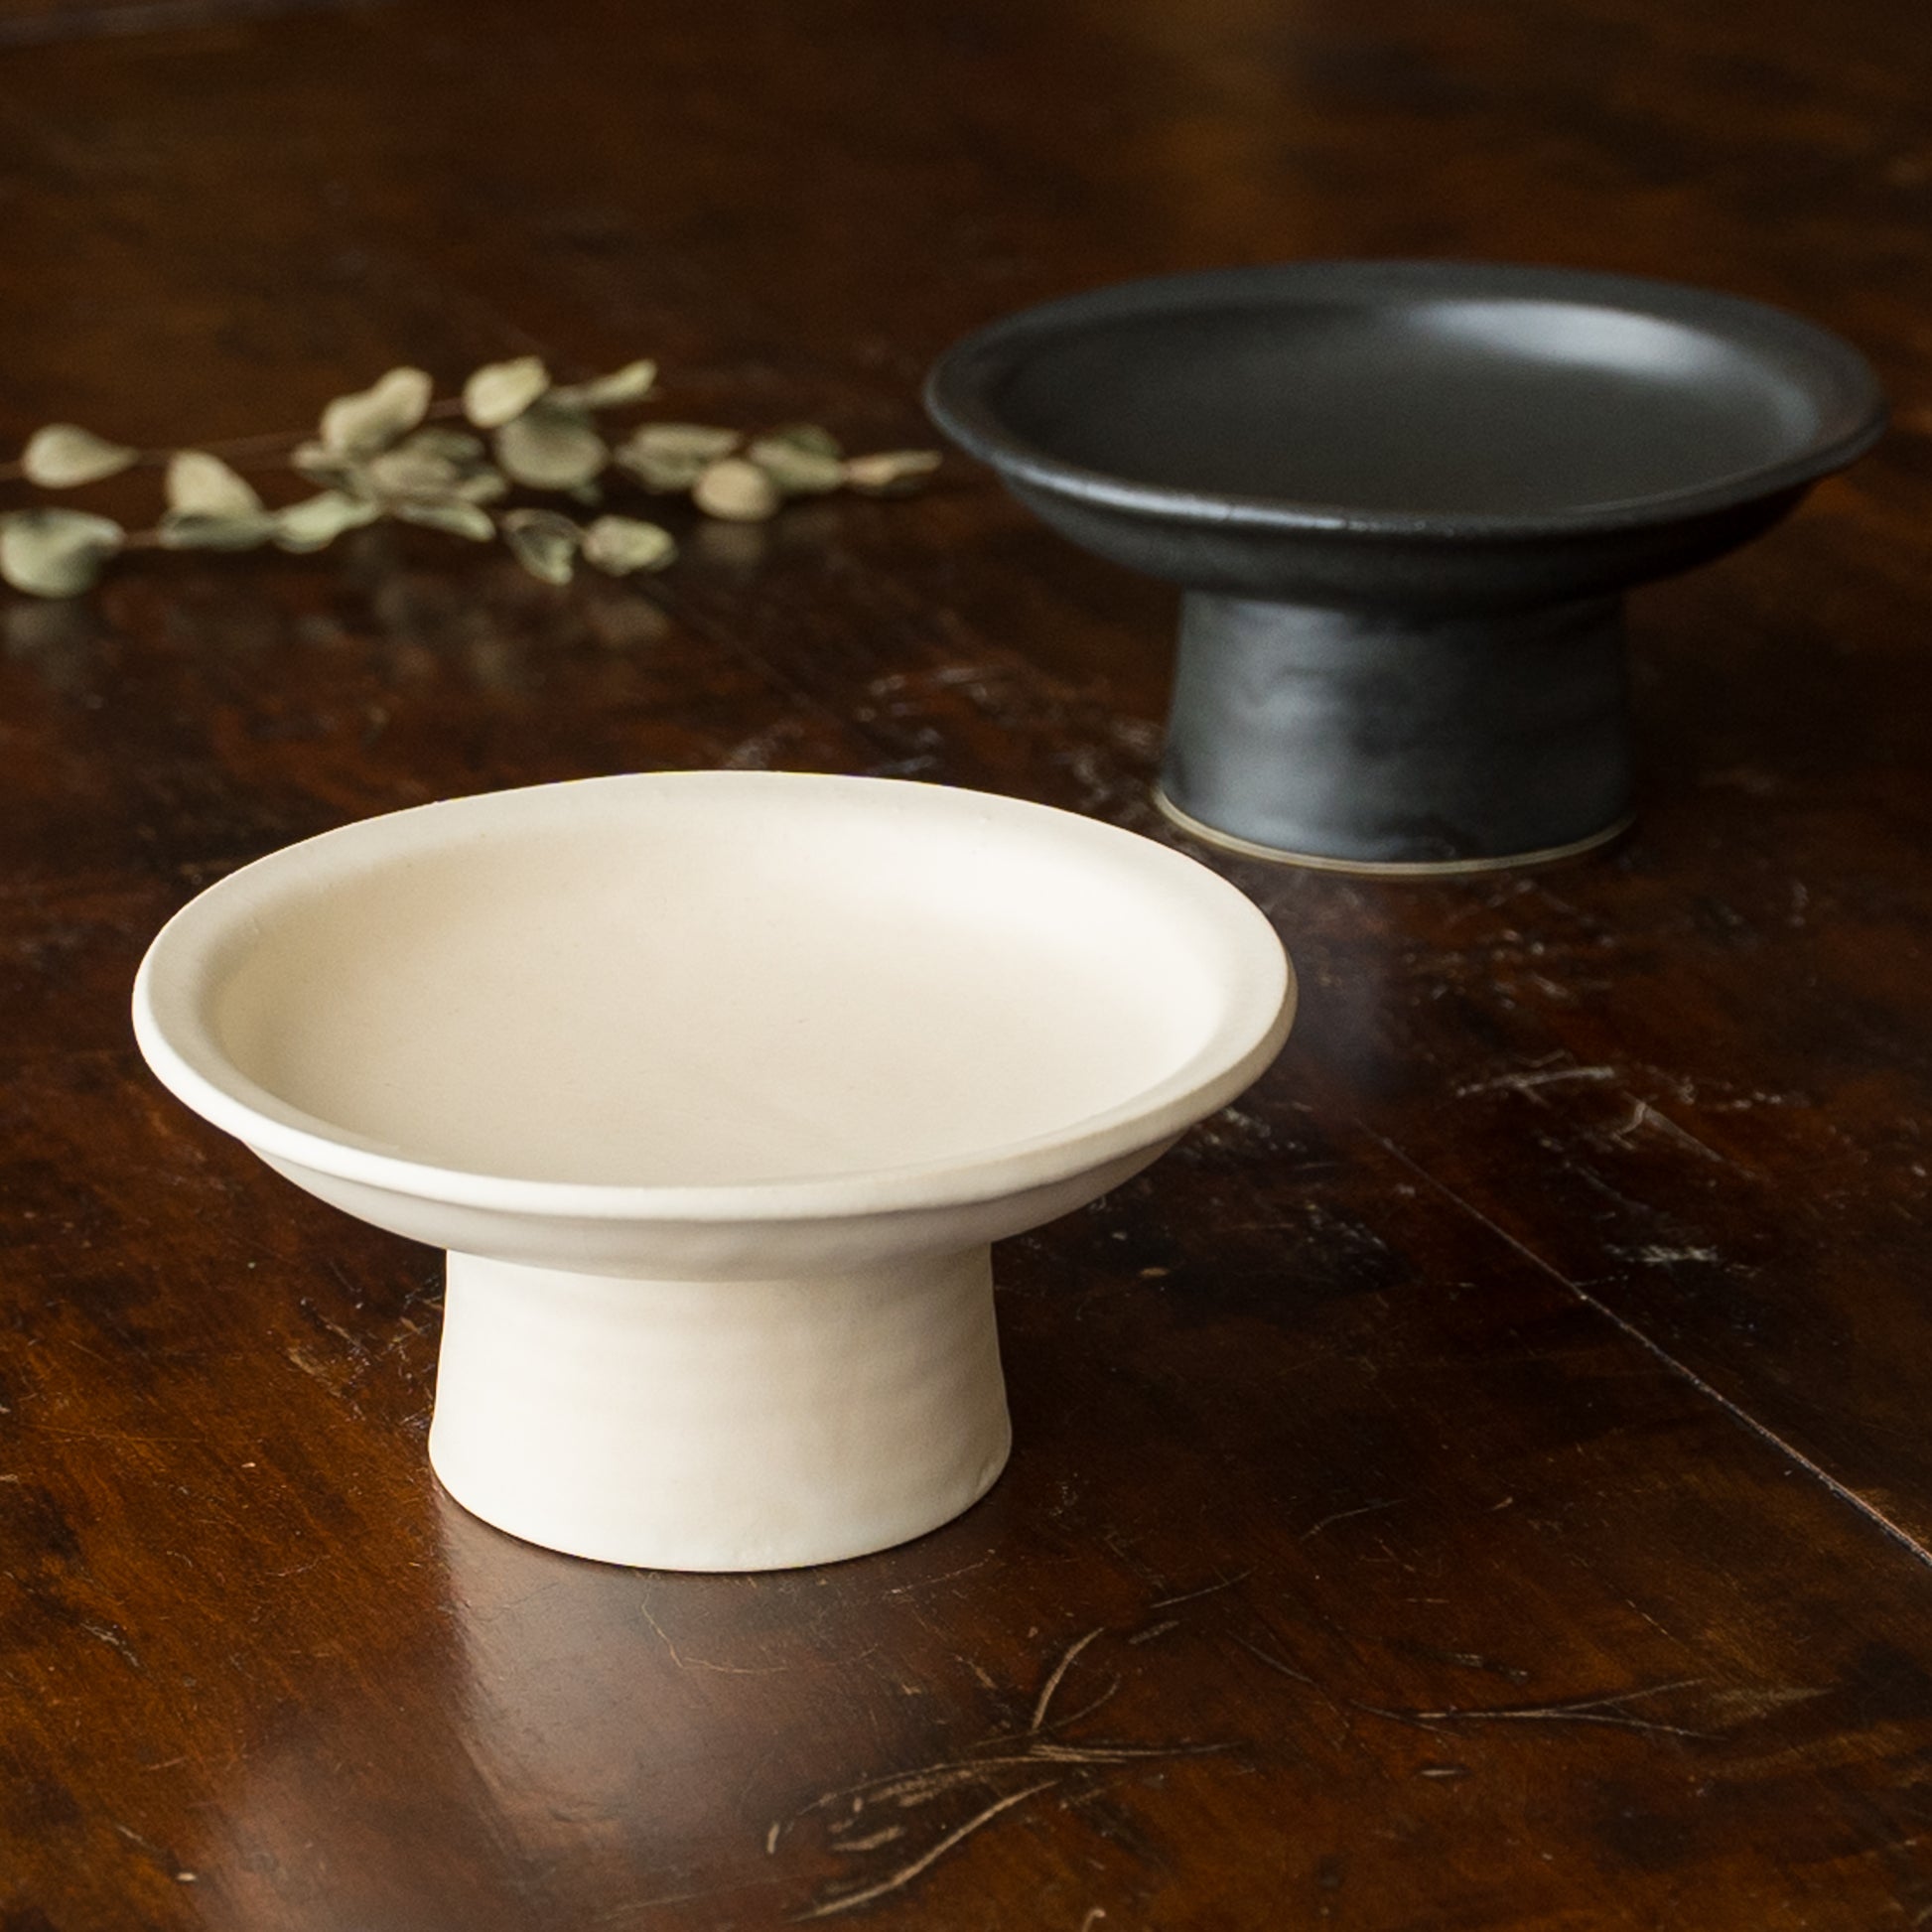 食卓を上品に彩ってくれるyoshida potteryの高杯皿